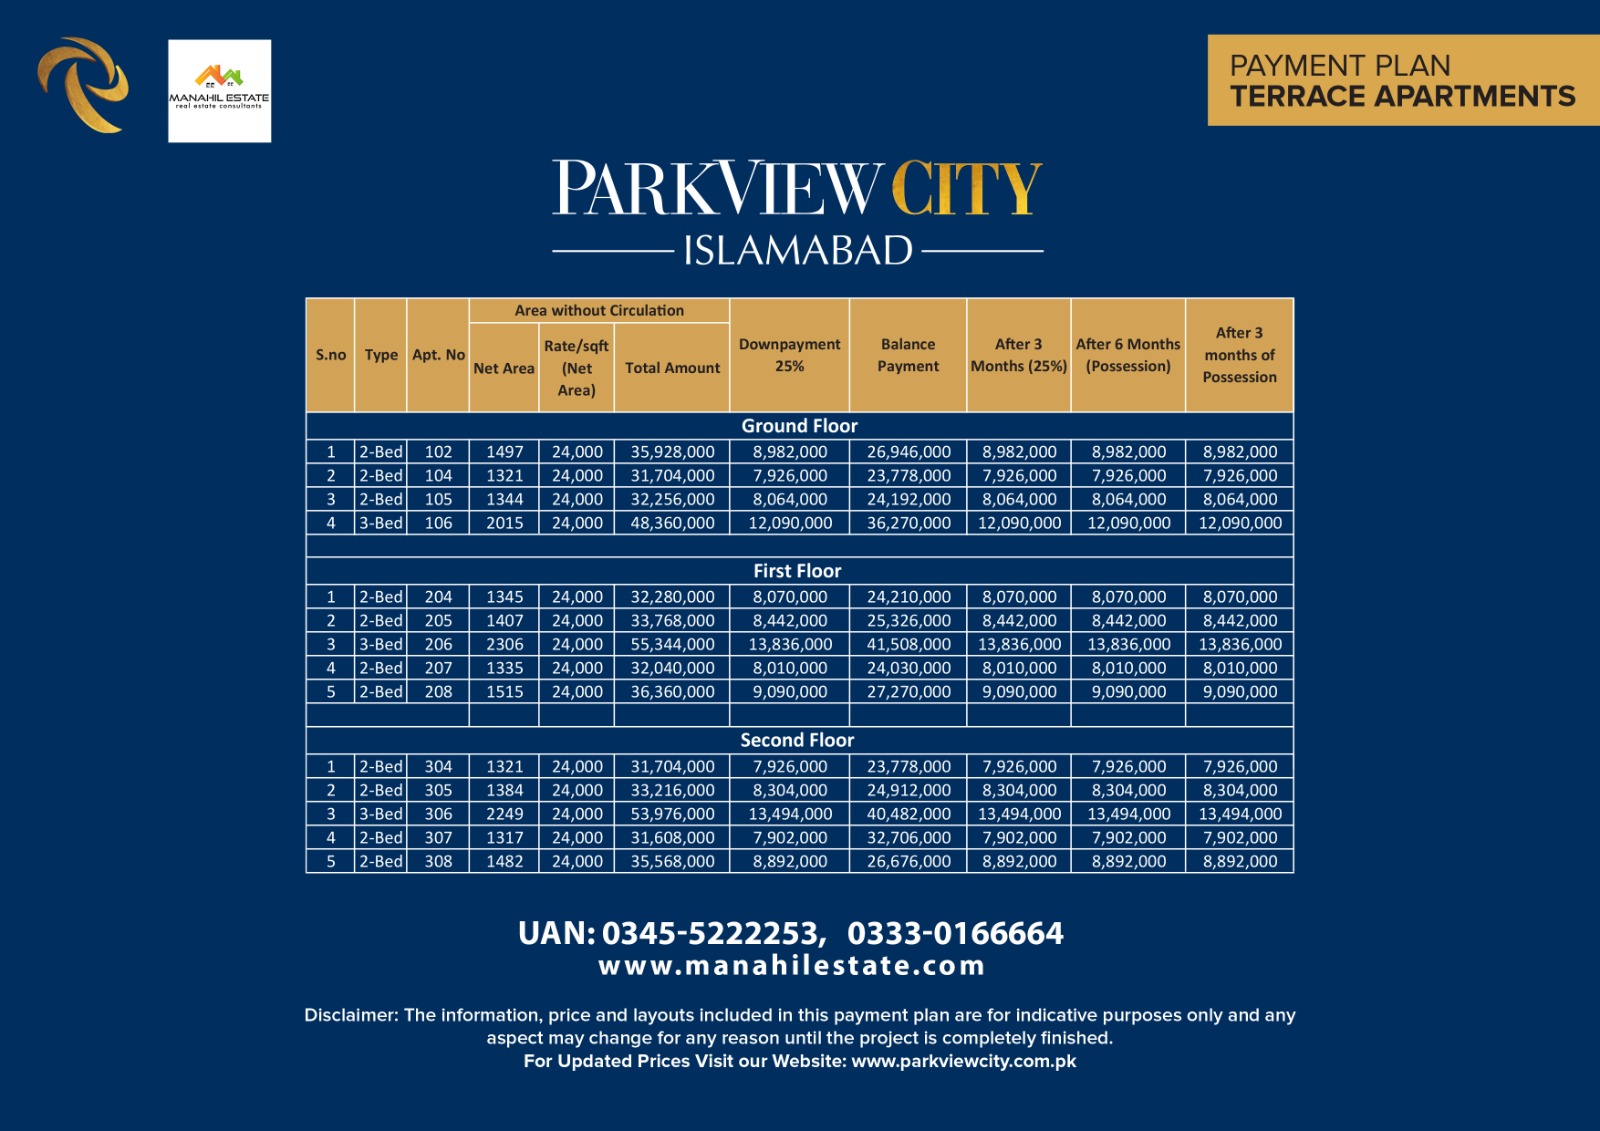 Park View City Terrace Apartments Payment Plan